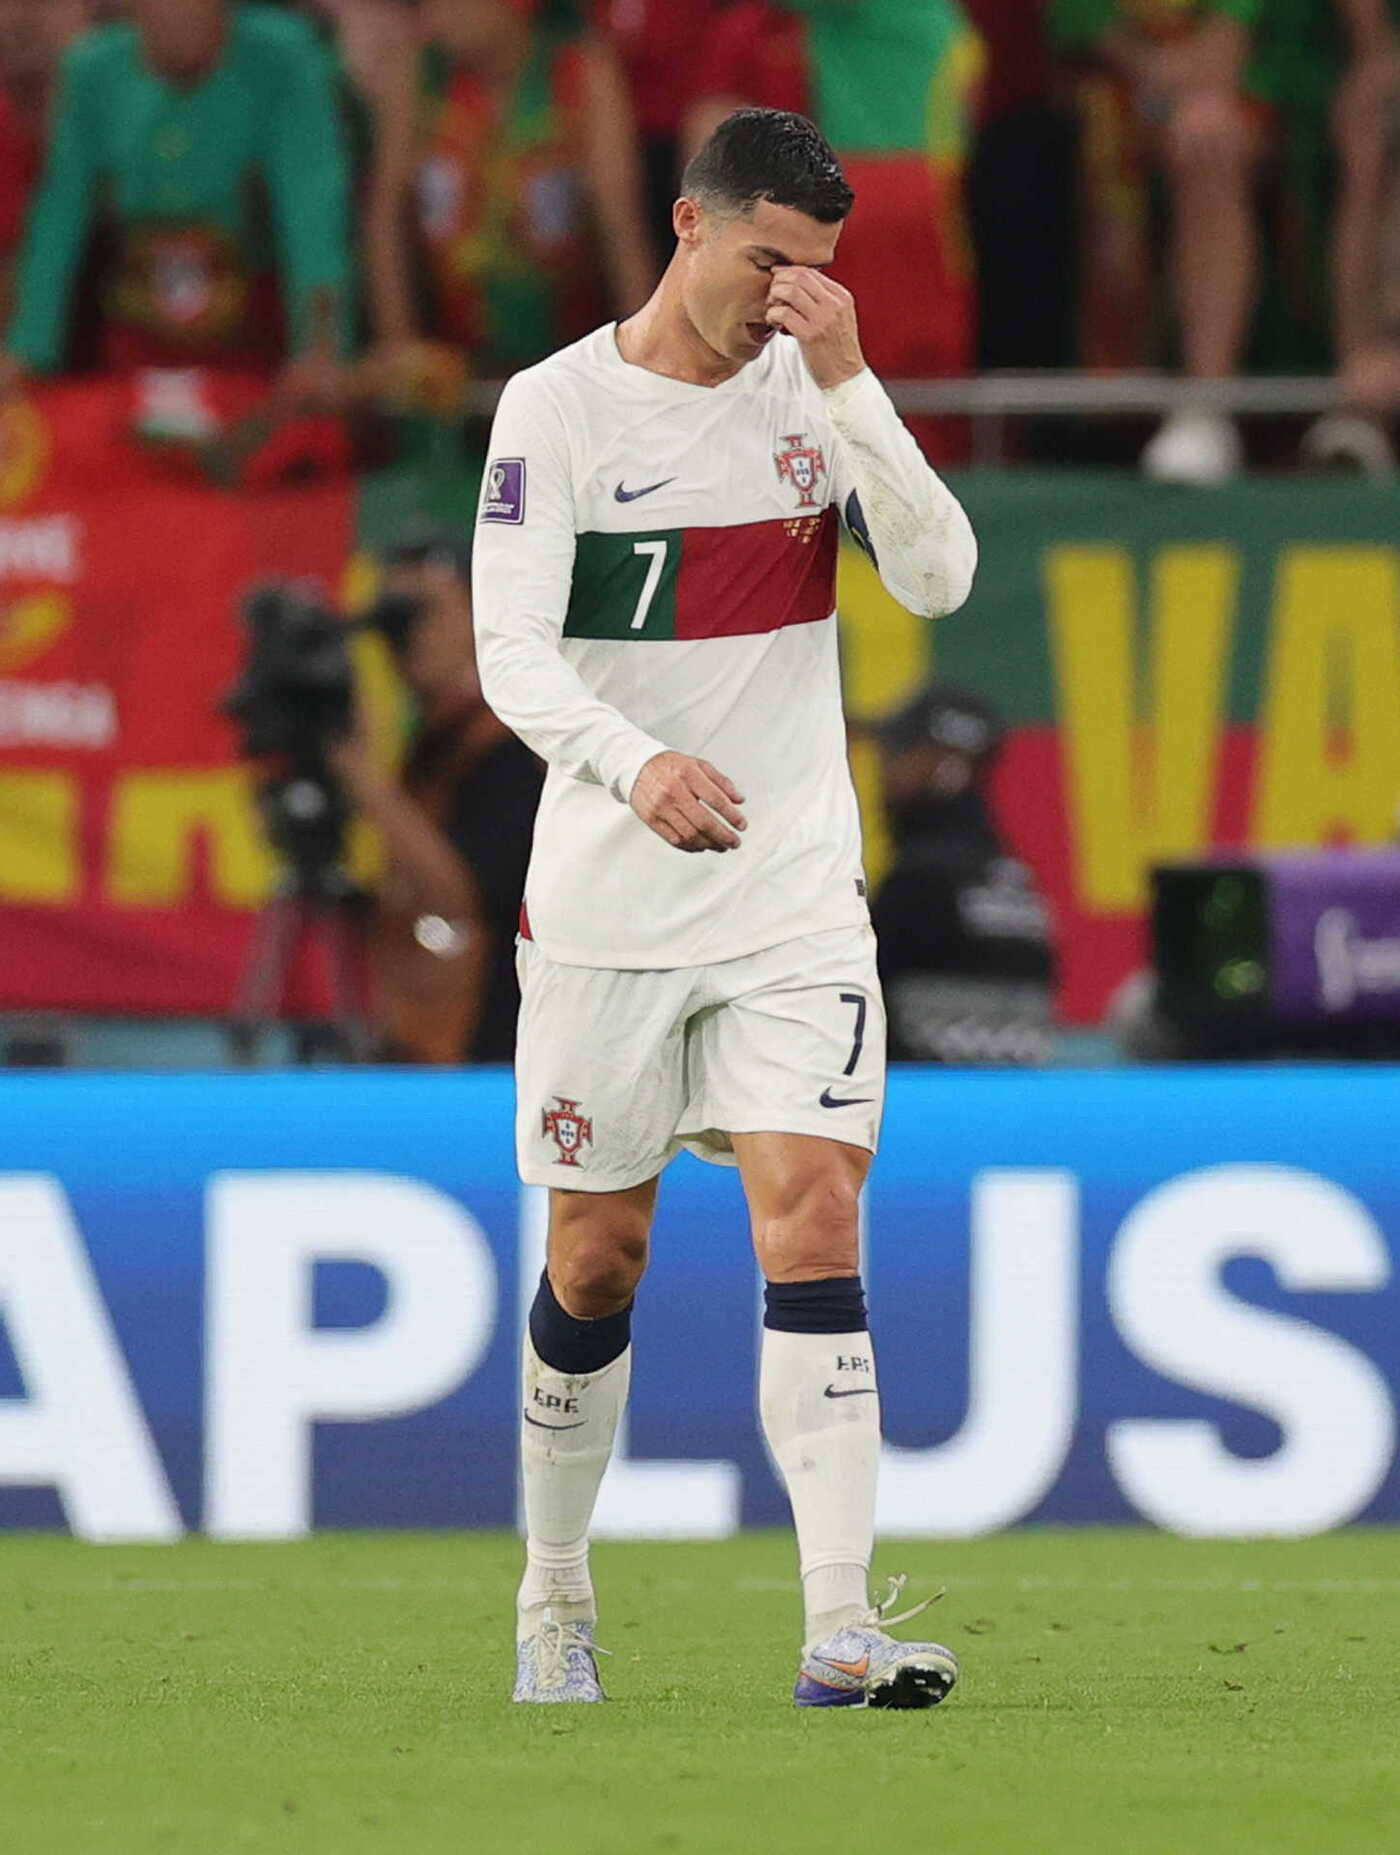 Ronaldo, khóc nức nở: Ronaldo là một trong những cầu thủ vĩ đại nhất trong lịch sử bóng đá. Nhưng cũng có lúc anh cũng khóc khi đội bóng của mình thất bại. Hãy xem những hình ảnh xúc động về những khoảnh khắc cảm xúc của anh.